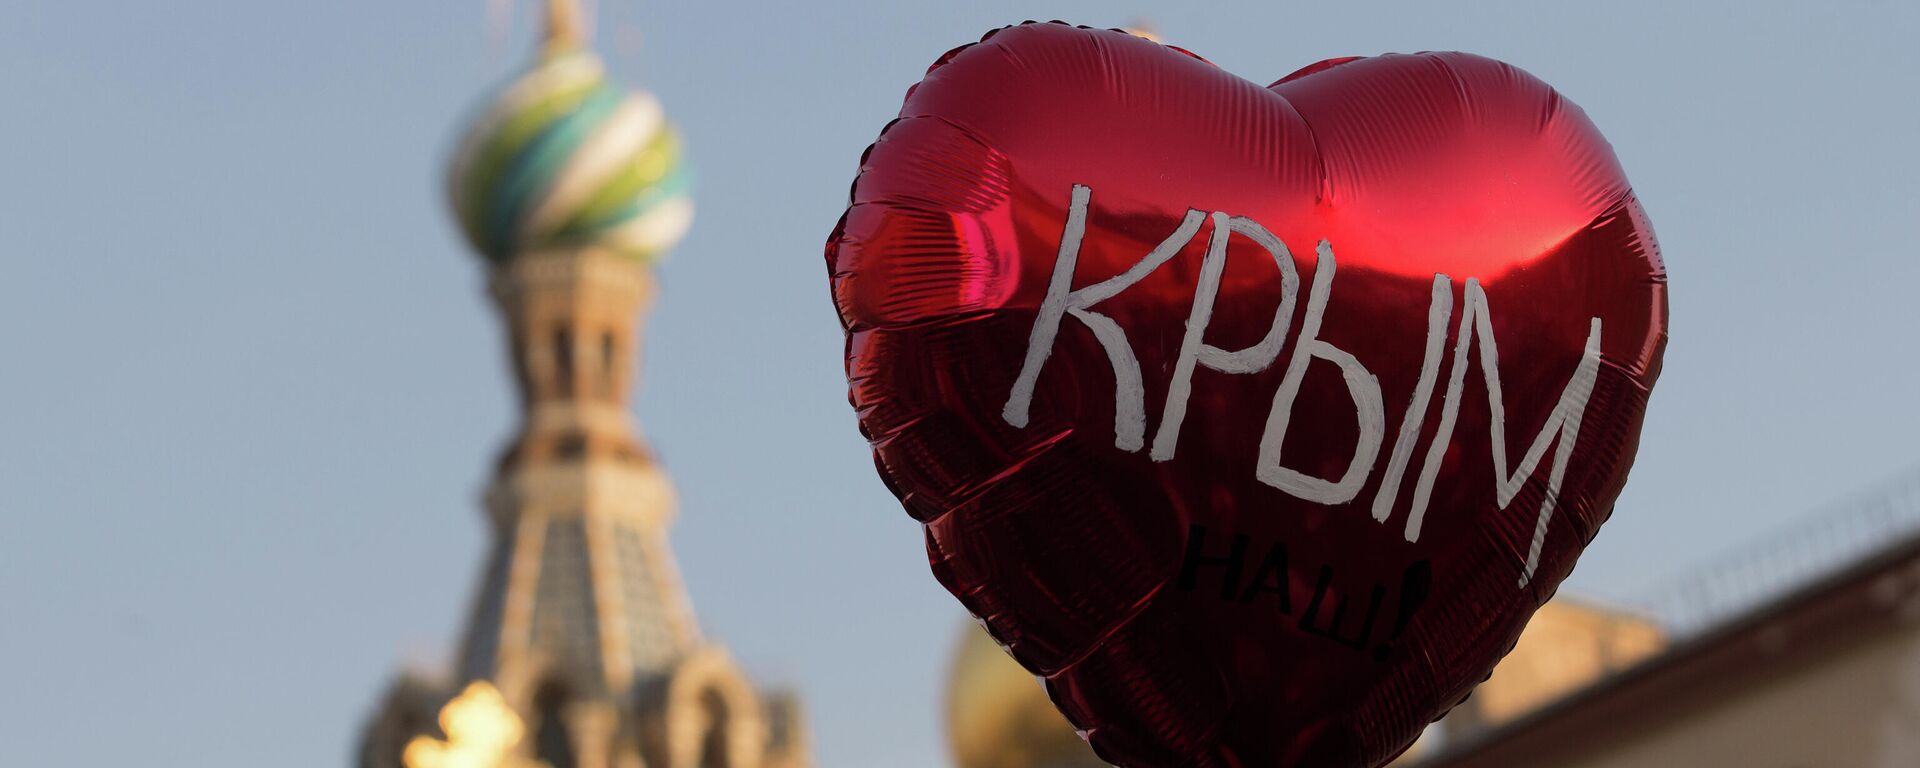 Воздушный шар во время праздничного митинга в Санкт-Петербурге в честь воссоединения Крыма и Севастополя с Россией - Sputnik Узбекистан, 1920, 25.07.2021